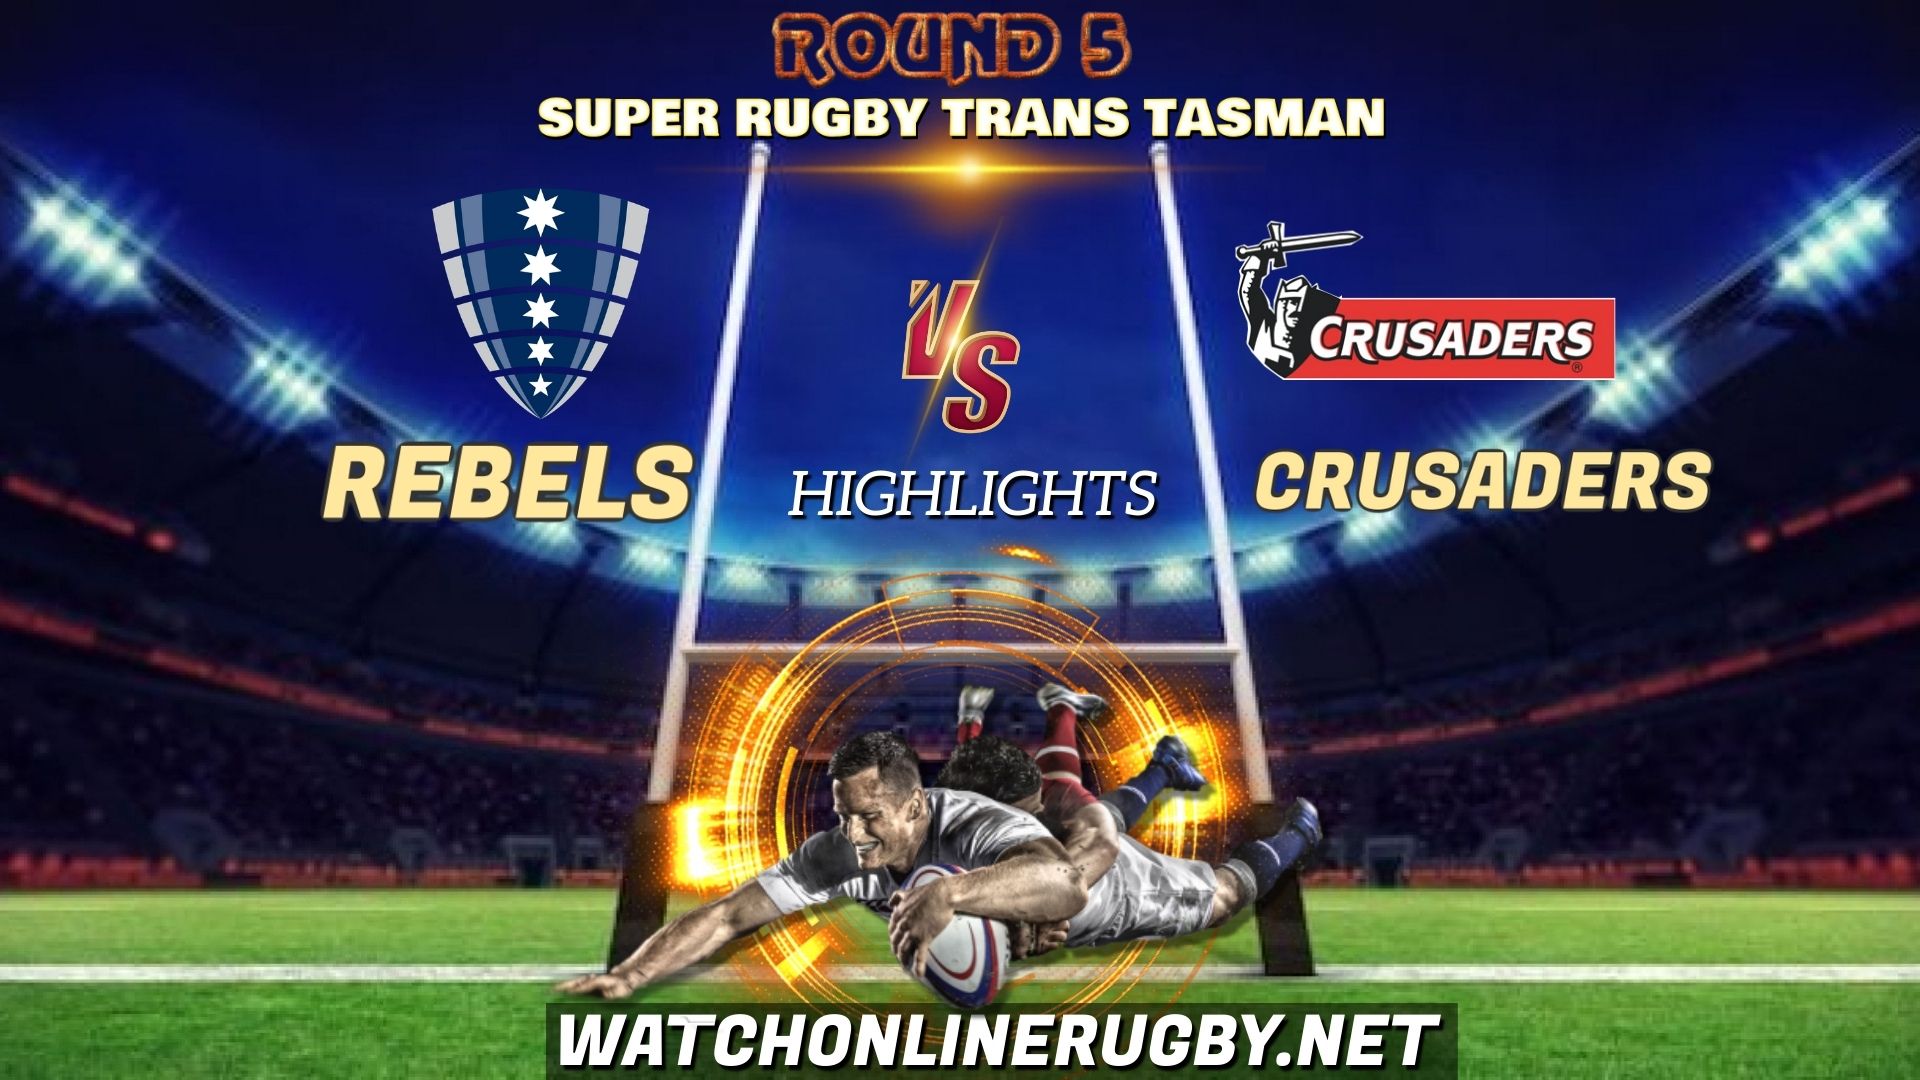 Rebels Vs Crusaders Super Rugby Trans Tasman 2021 RD 5